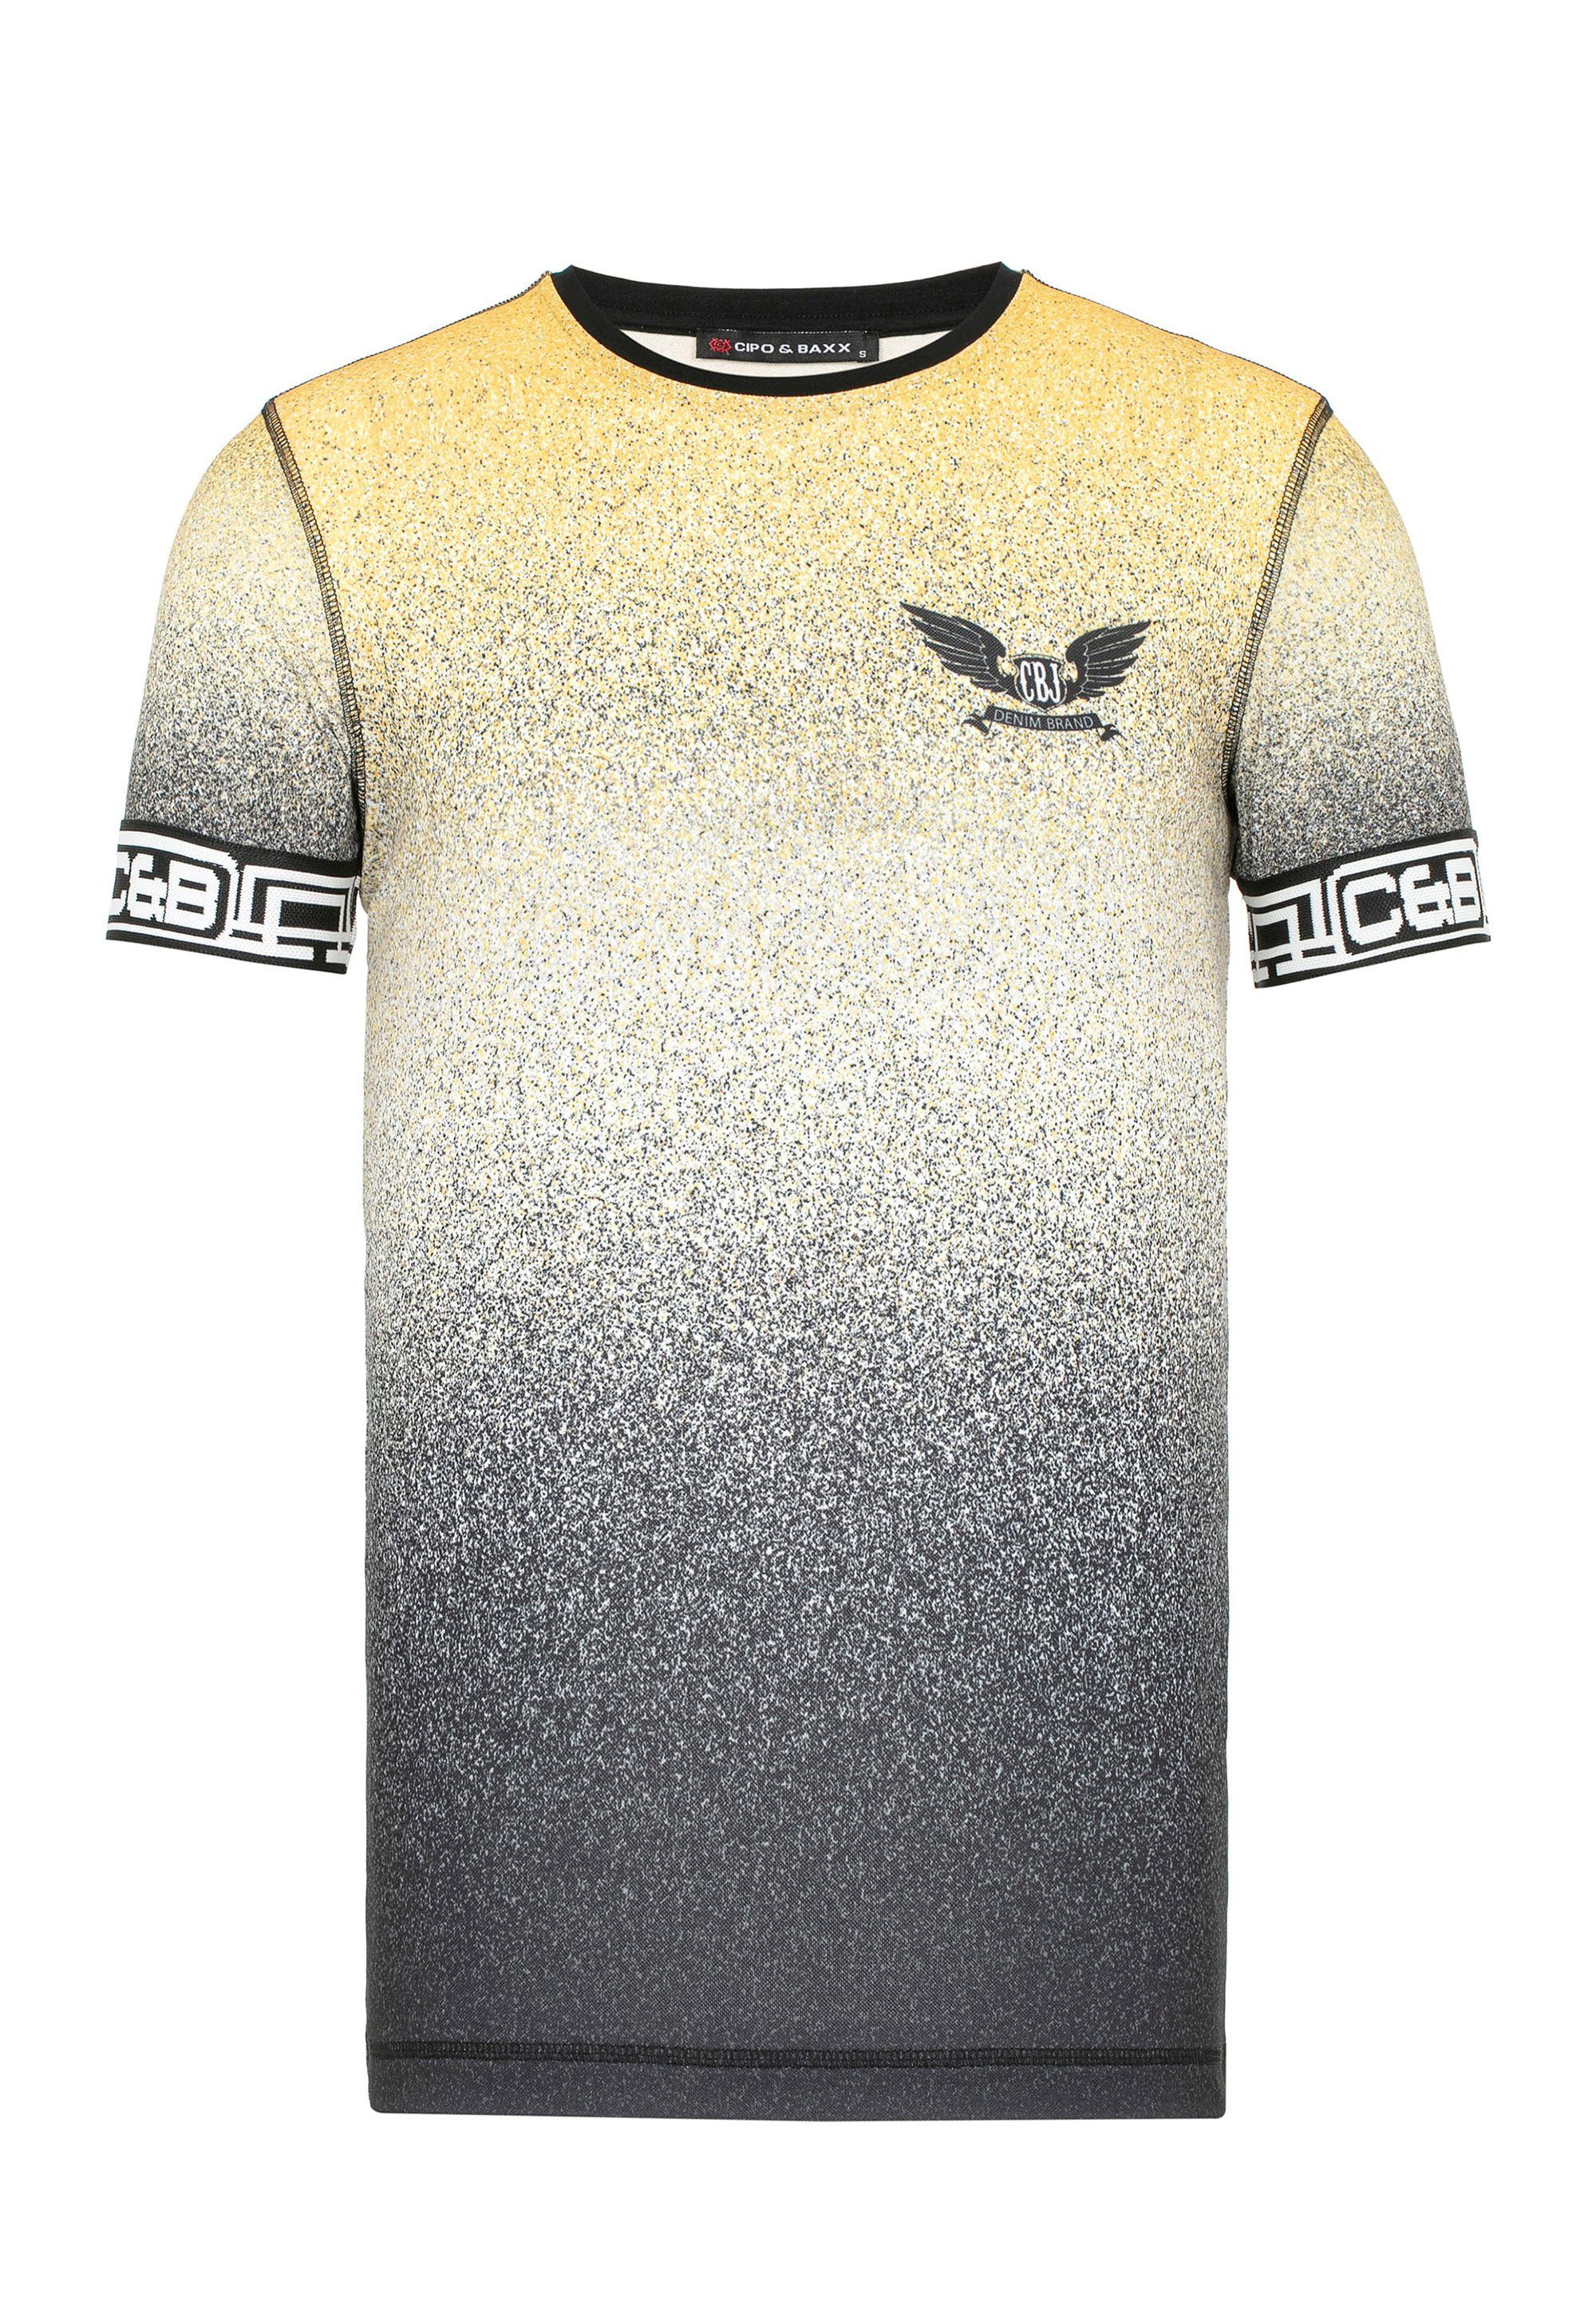 coolem gelb Baxx Farbverlauf Cipo mit & T-Shirt